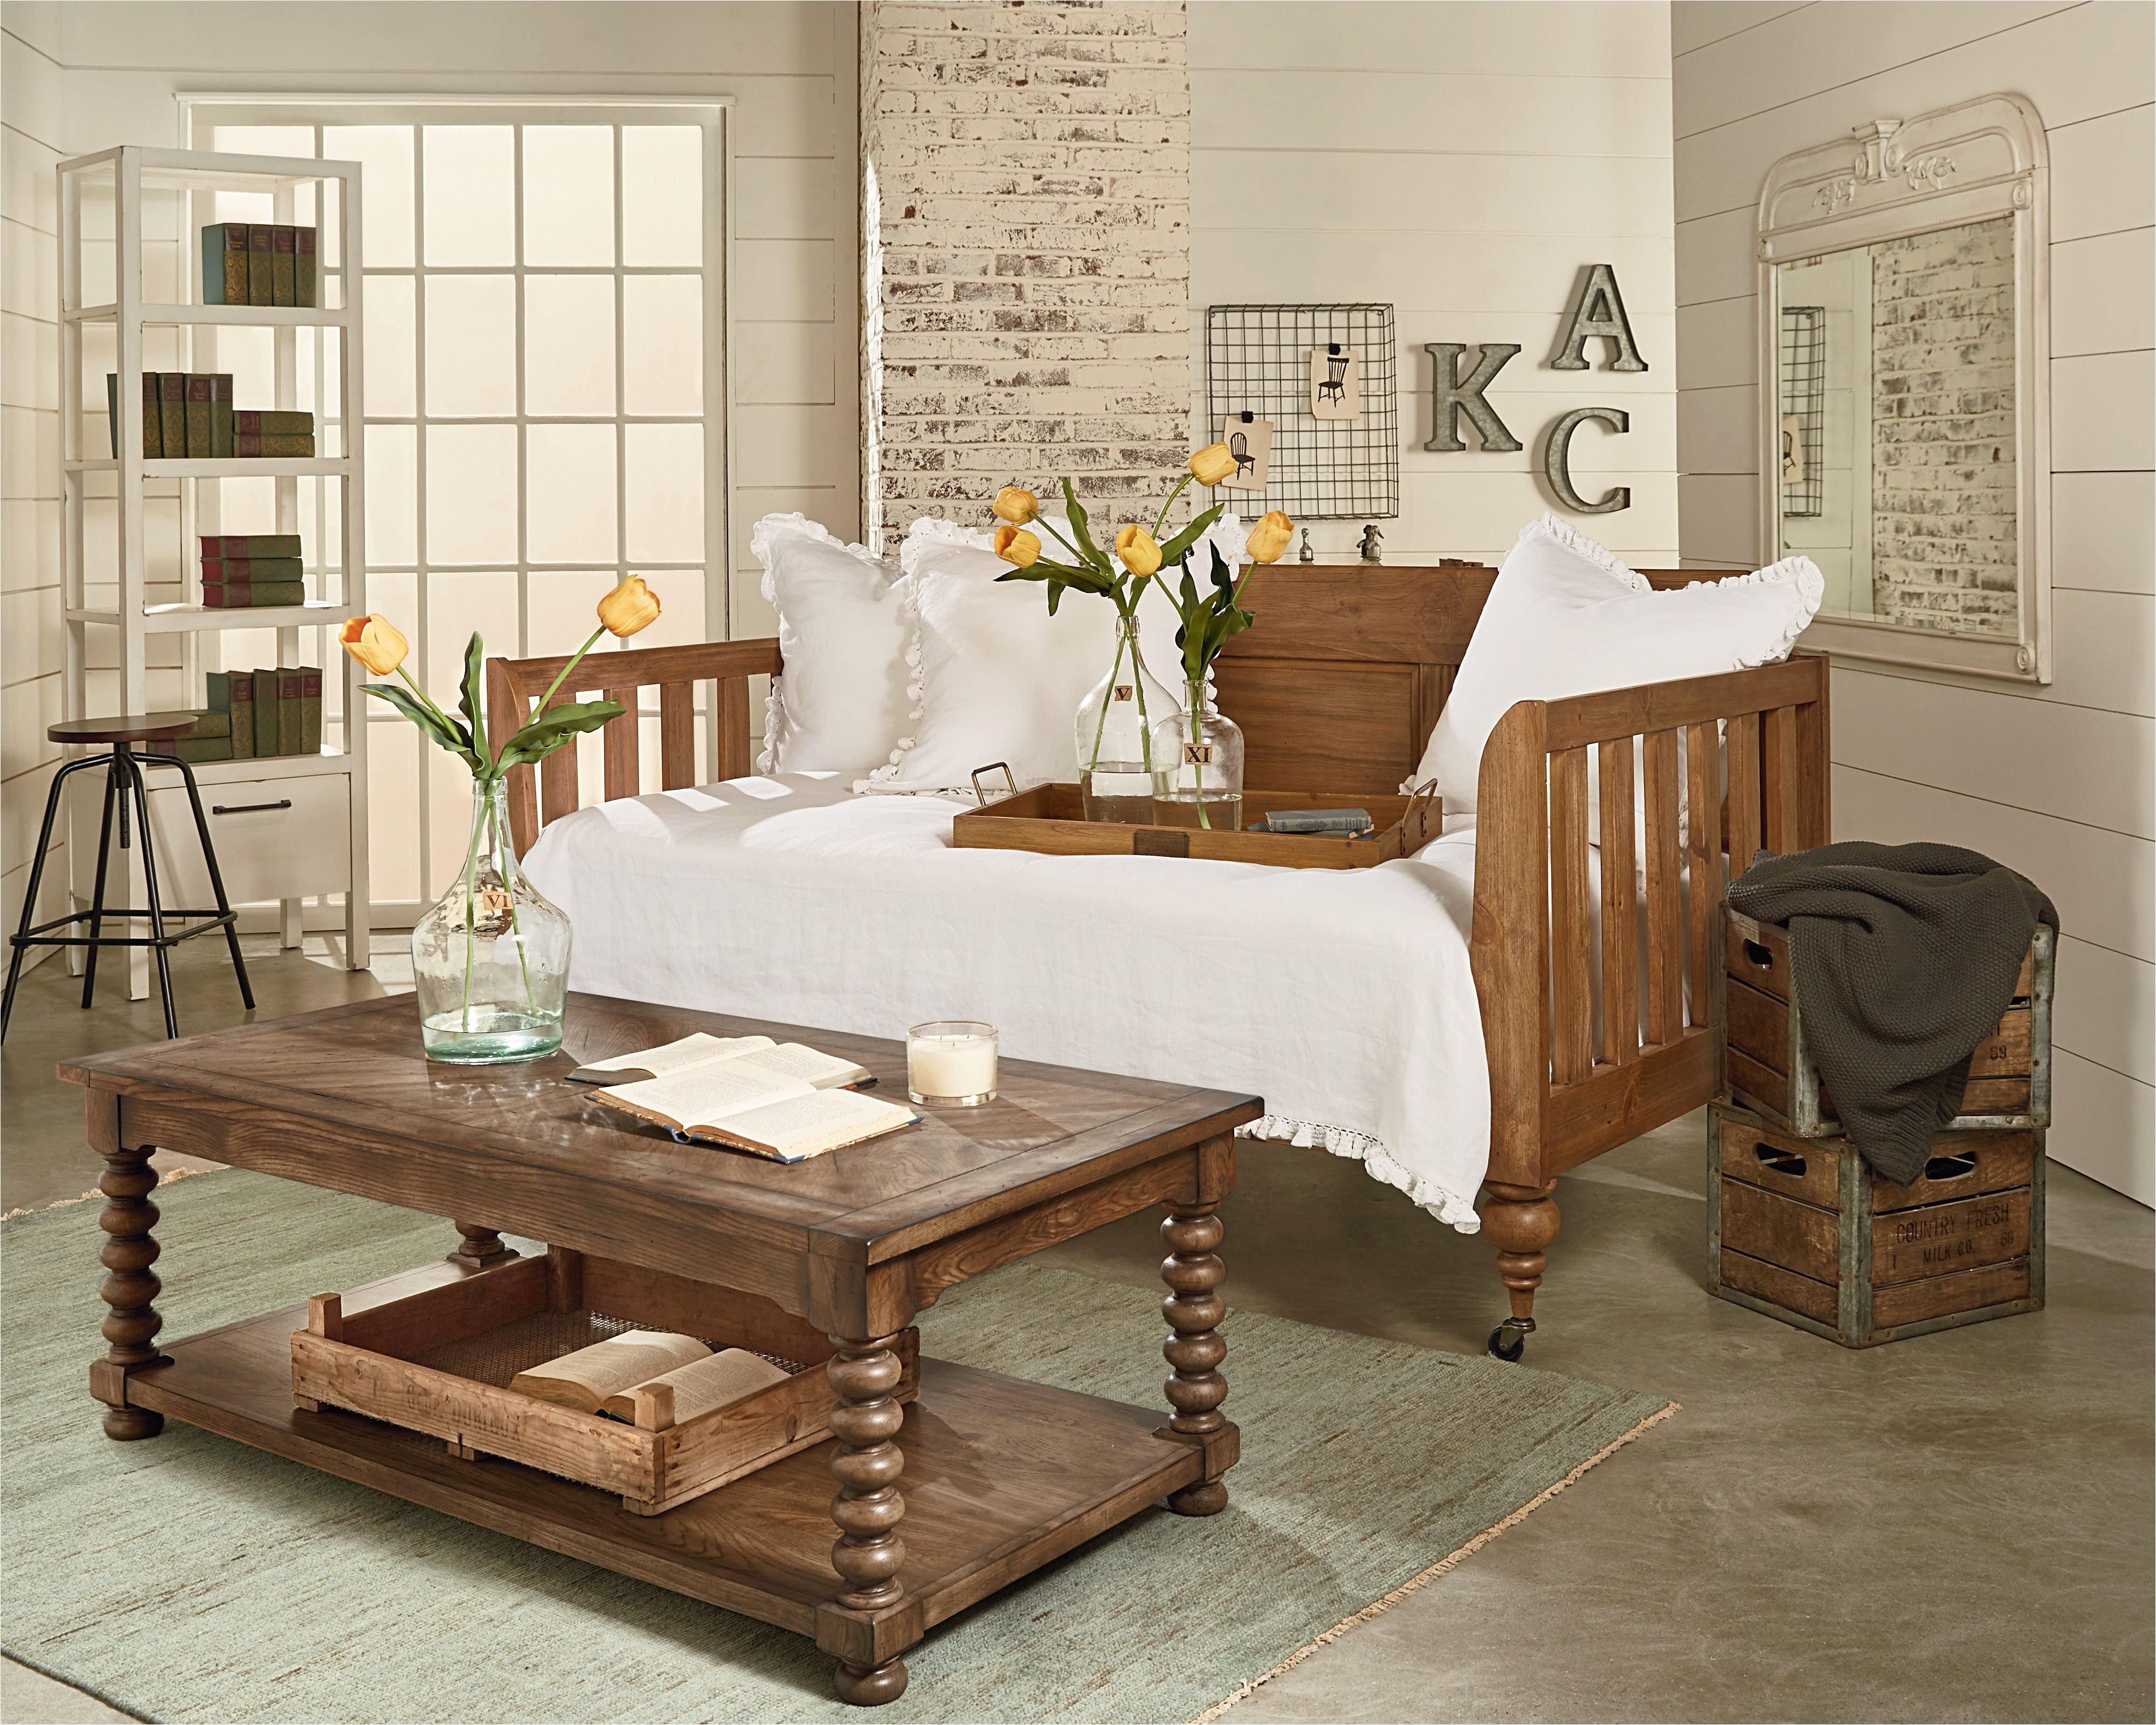 furniture levin furniture bedroom sets best levin furniture locations furniture sale furniture sales associate